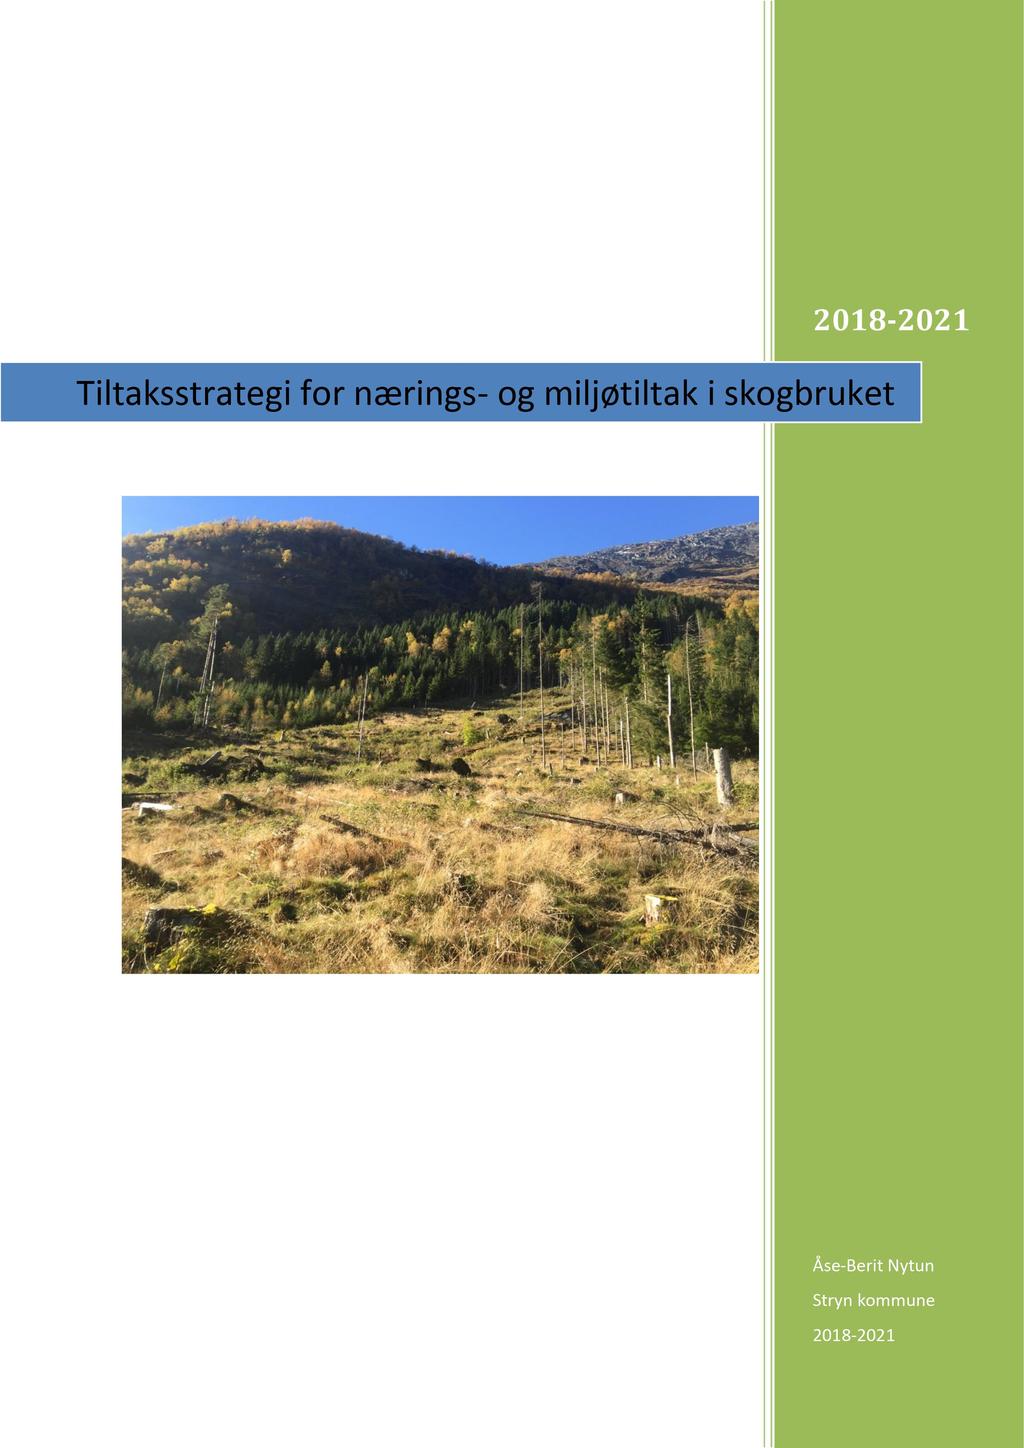 2018-2021 Tiltaksstrategi for nærings - og miljøtiltak